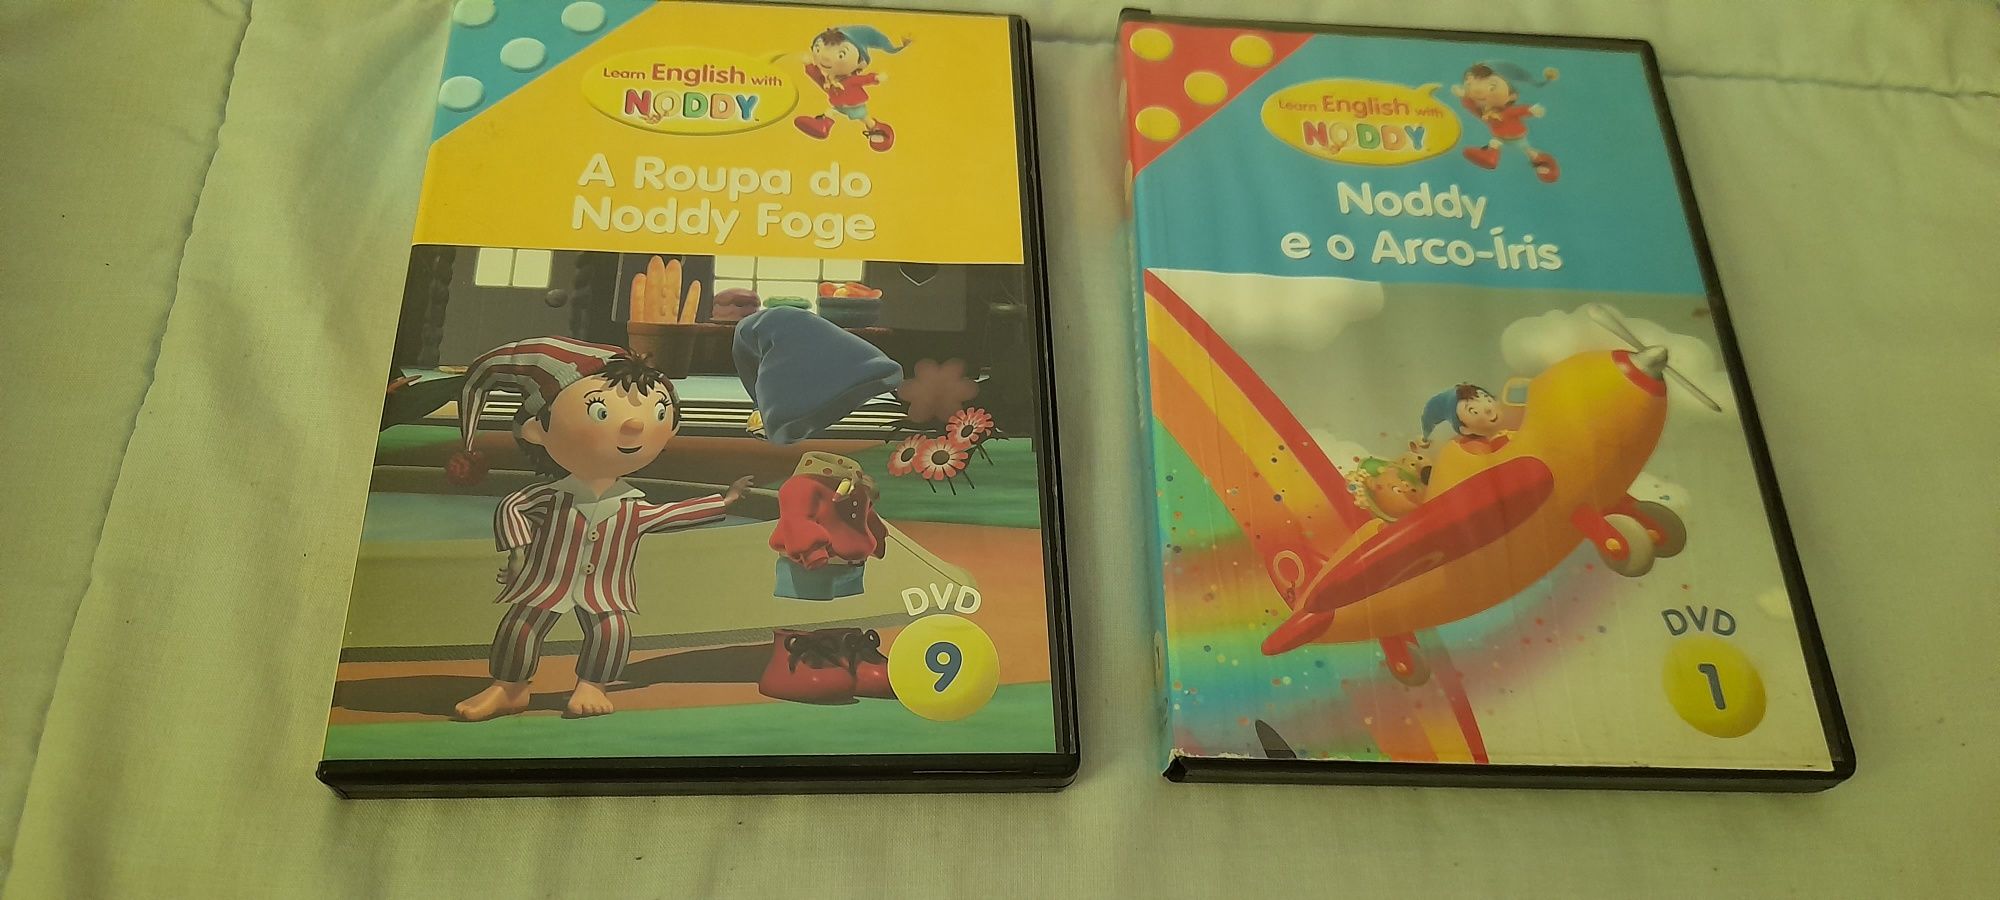 DVD, Noddy e o arco íres, a roupa do Noddy foge